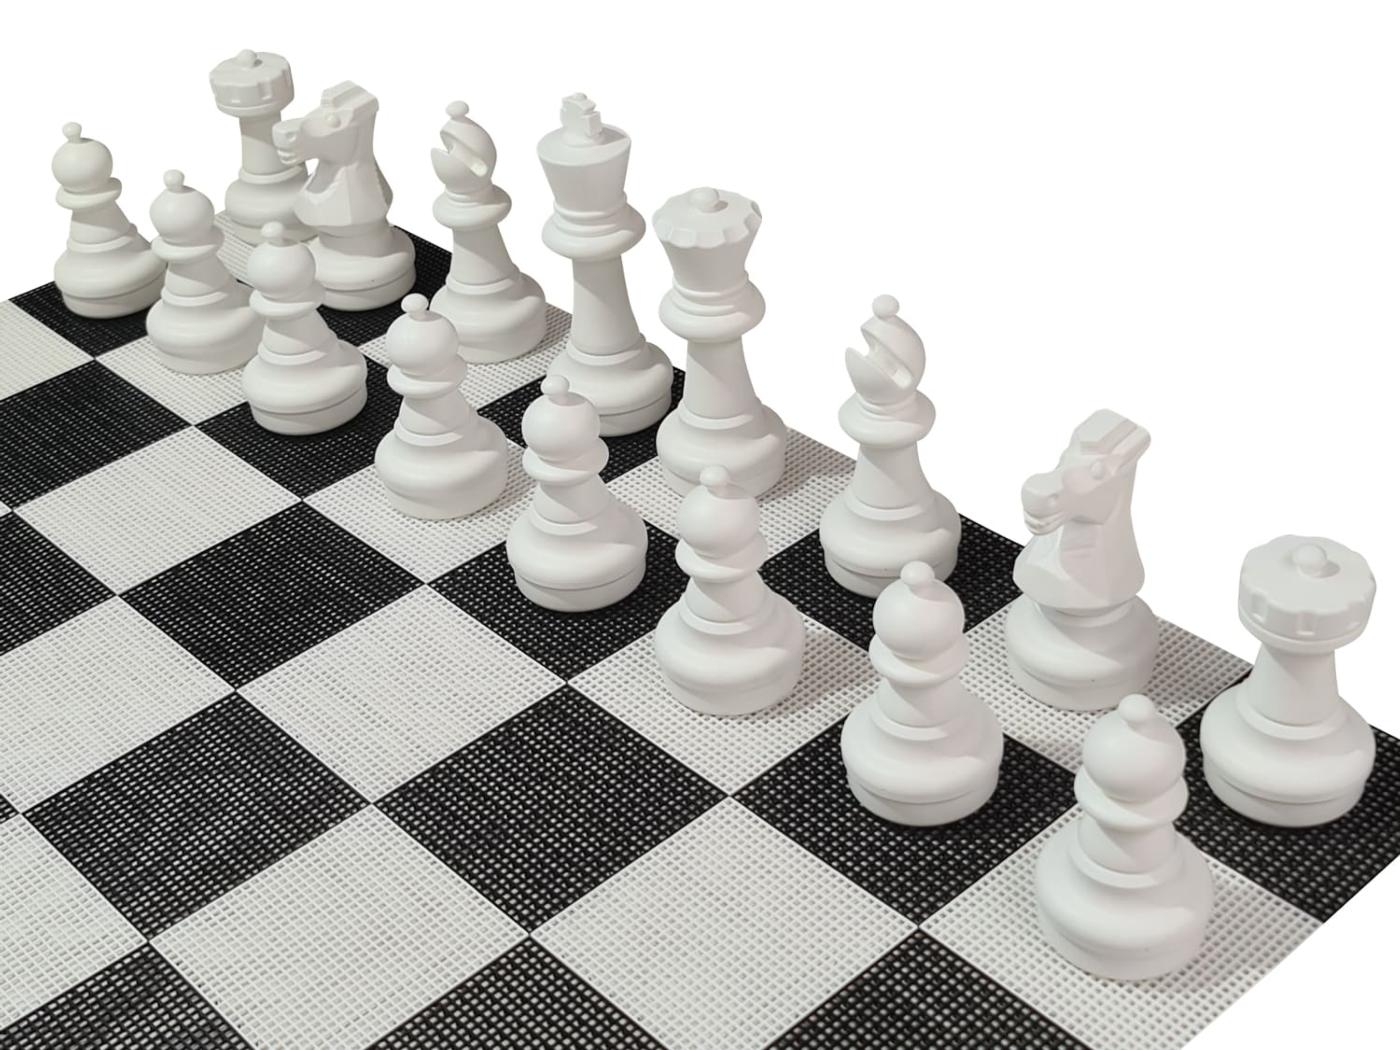 Joc d'escacs gegant amb tauler rígid gegant inclòs peces blanques sobre tauler